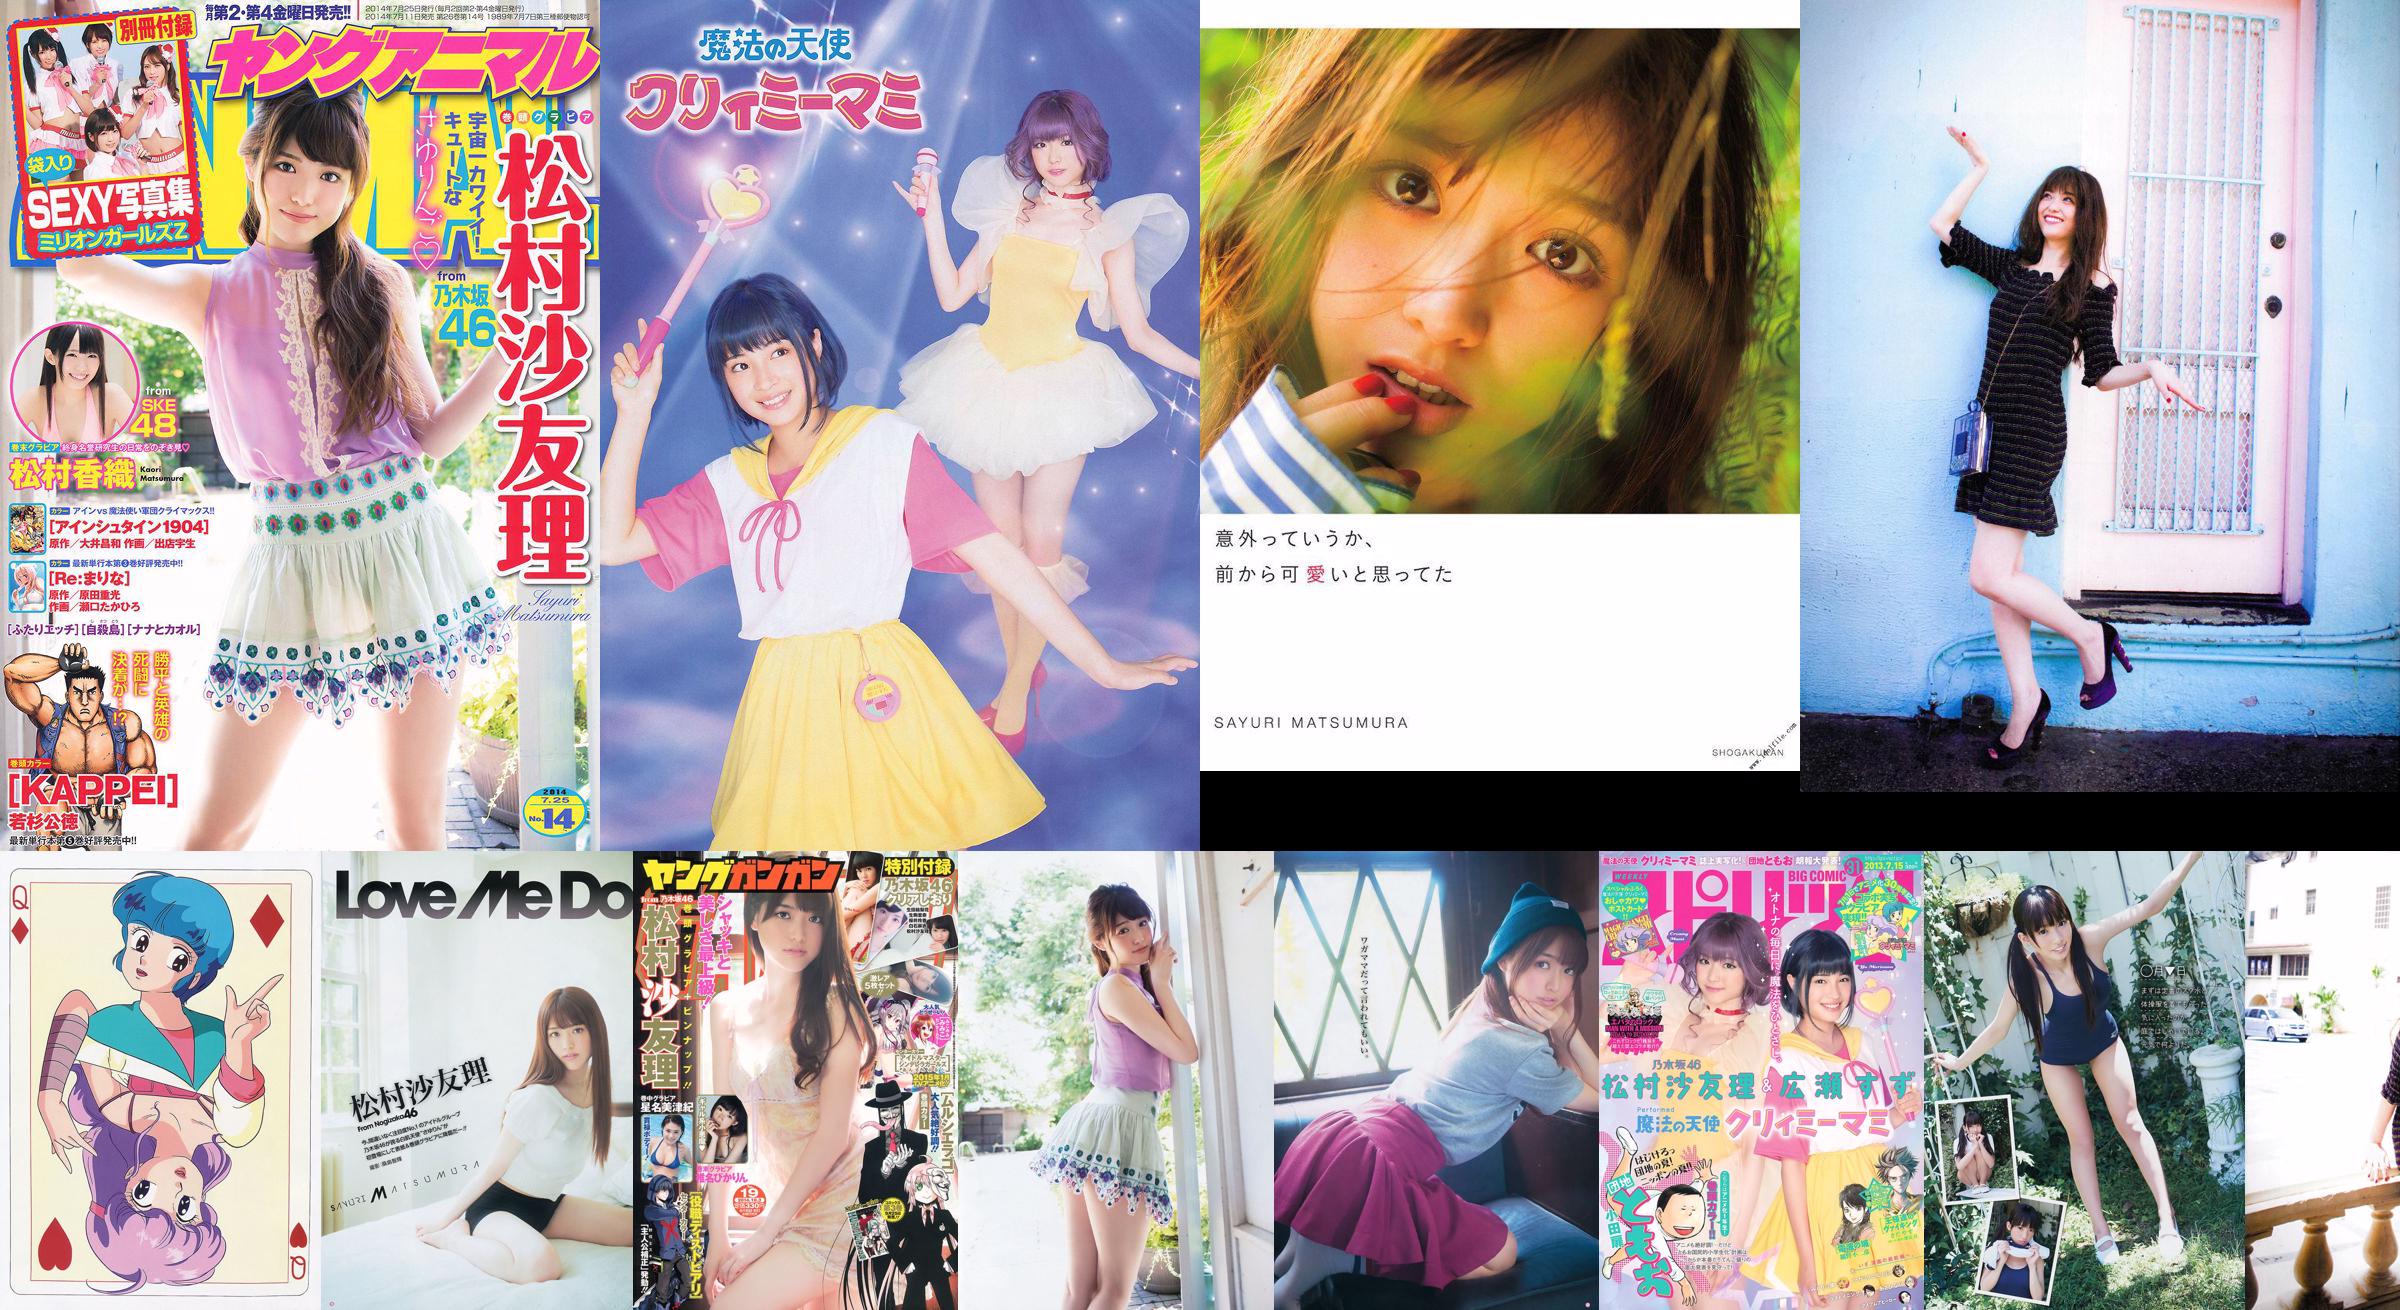 [Young Gangan] Sayuri Matsumura Hoshina Mizuki Shiina Pikarin Amaki giugno 2014 No.19 Fotografia No.a7f6c5 Pagina 11